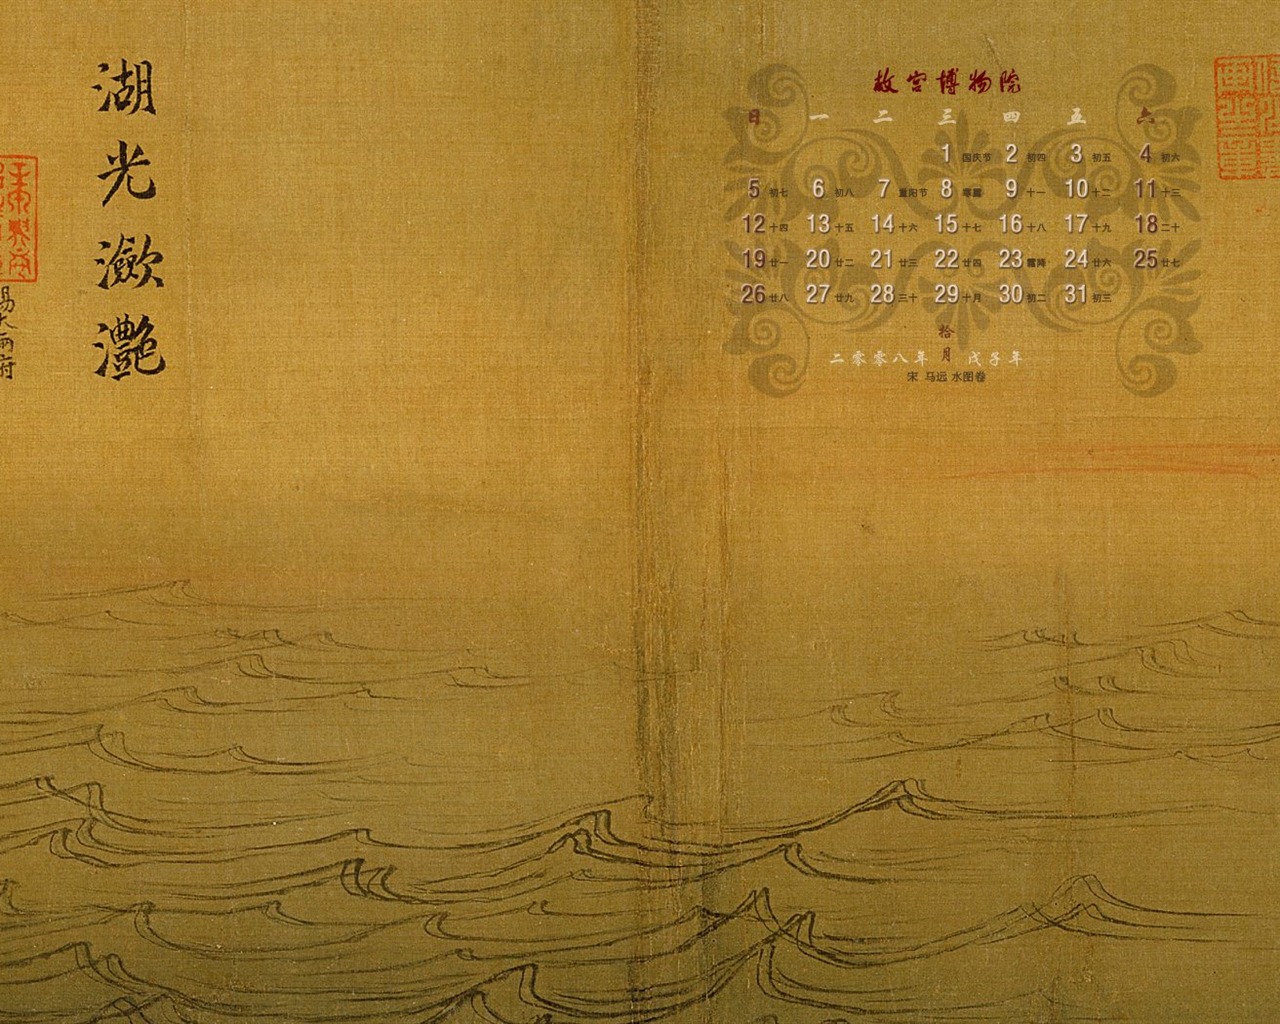 北京故宫博物院 文物展壁纸(二)18 - 1280x1024